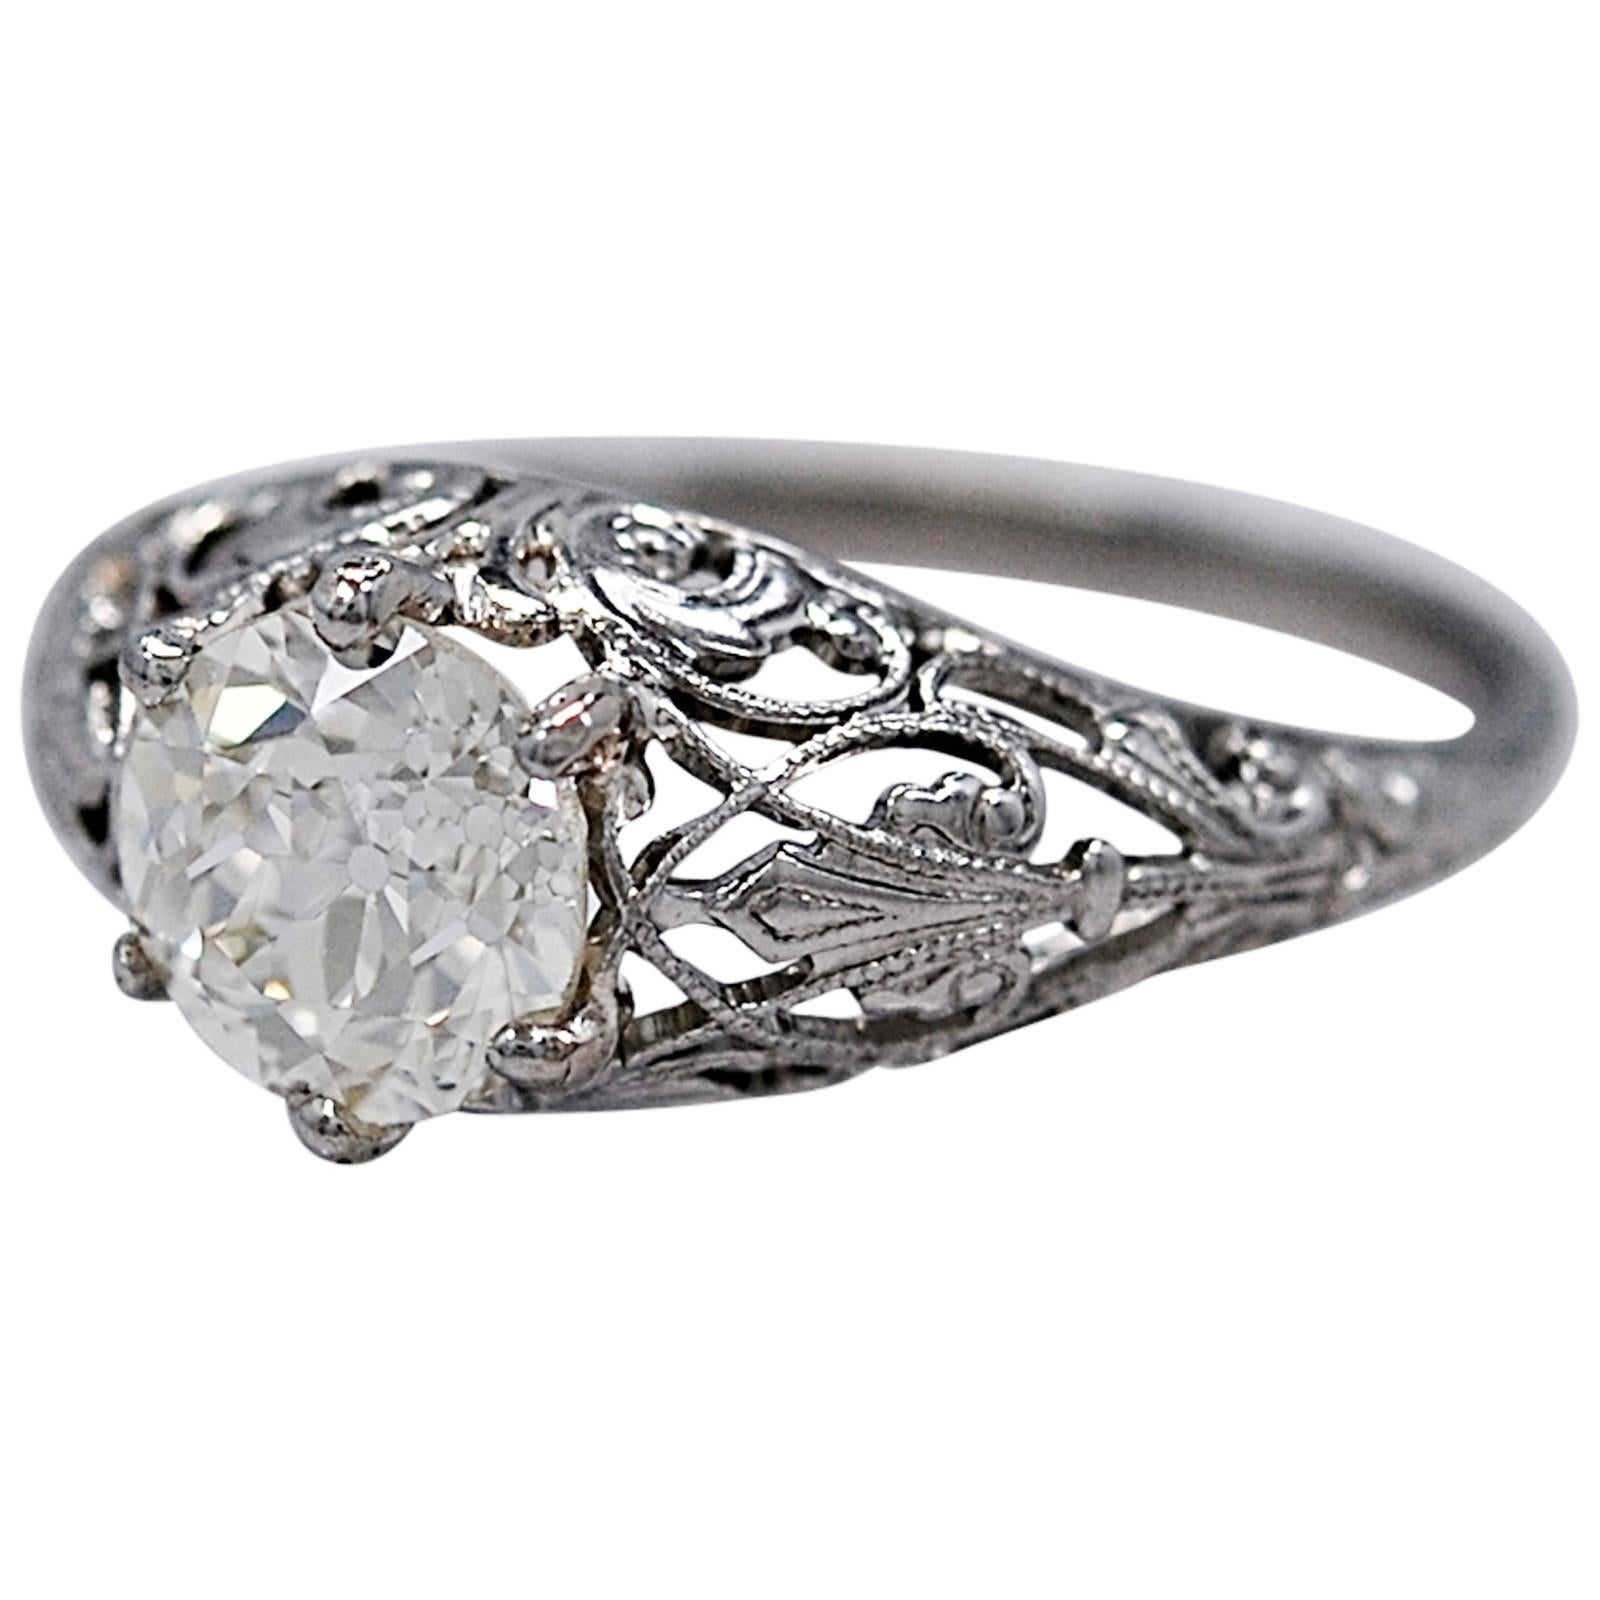 Amazing Edwardian 1.40 Carat Diamond Platinum Engagement Ring